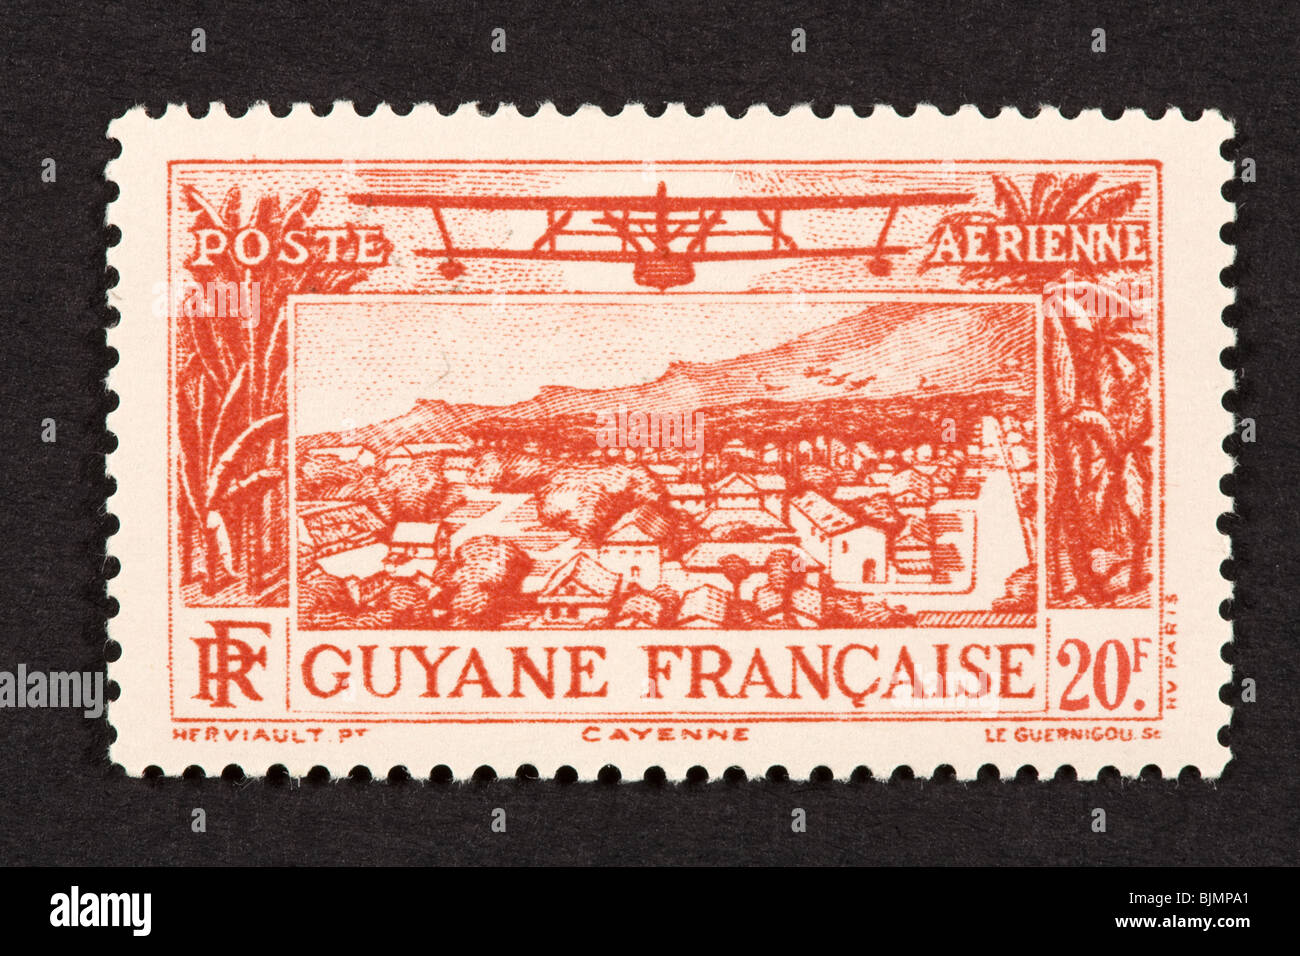 Francobollo dalla Guiana francese raffigurante la città di Cayenne. Foto Stock